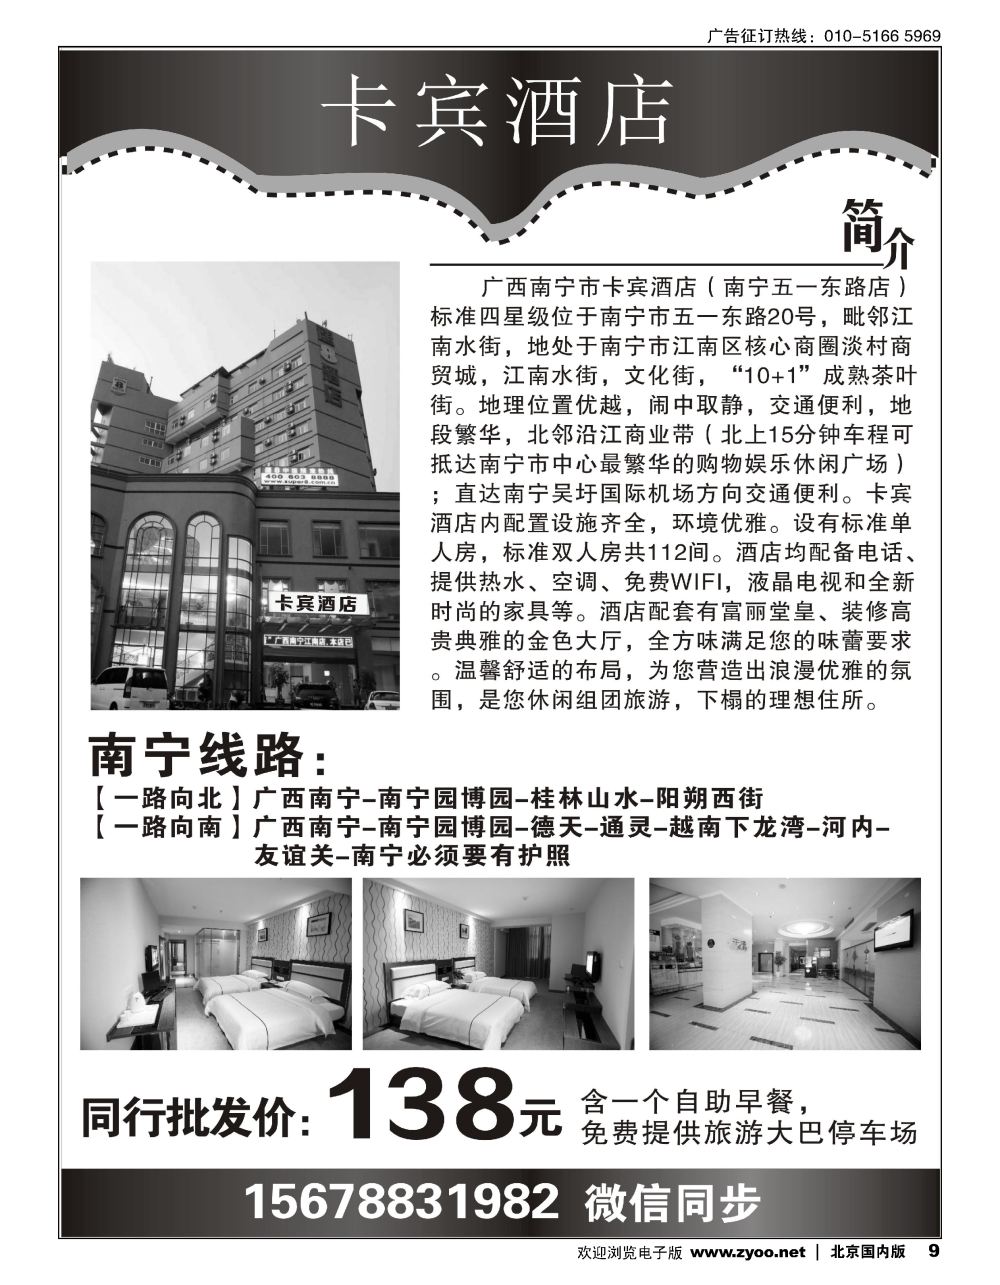 9广西南宁市卡宾酒店